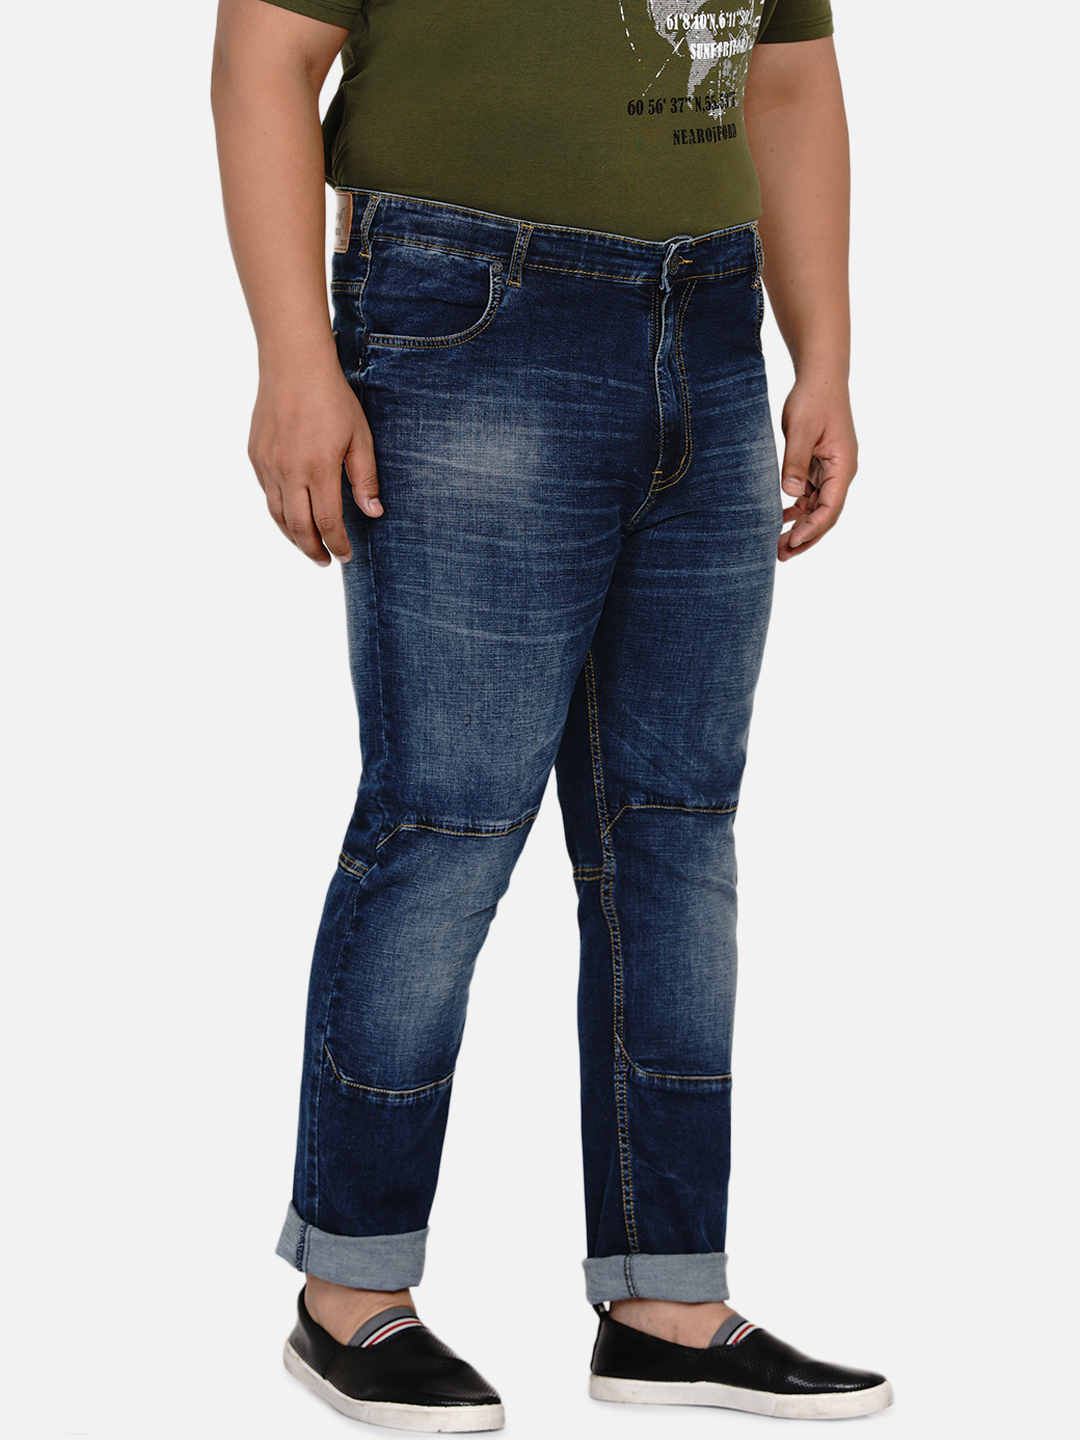 bottomwear/jeans/JPJ12186/jpj12186-3.jpg